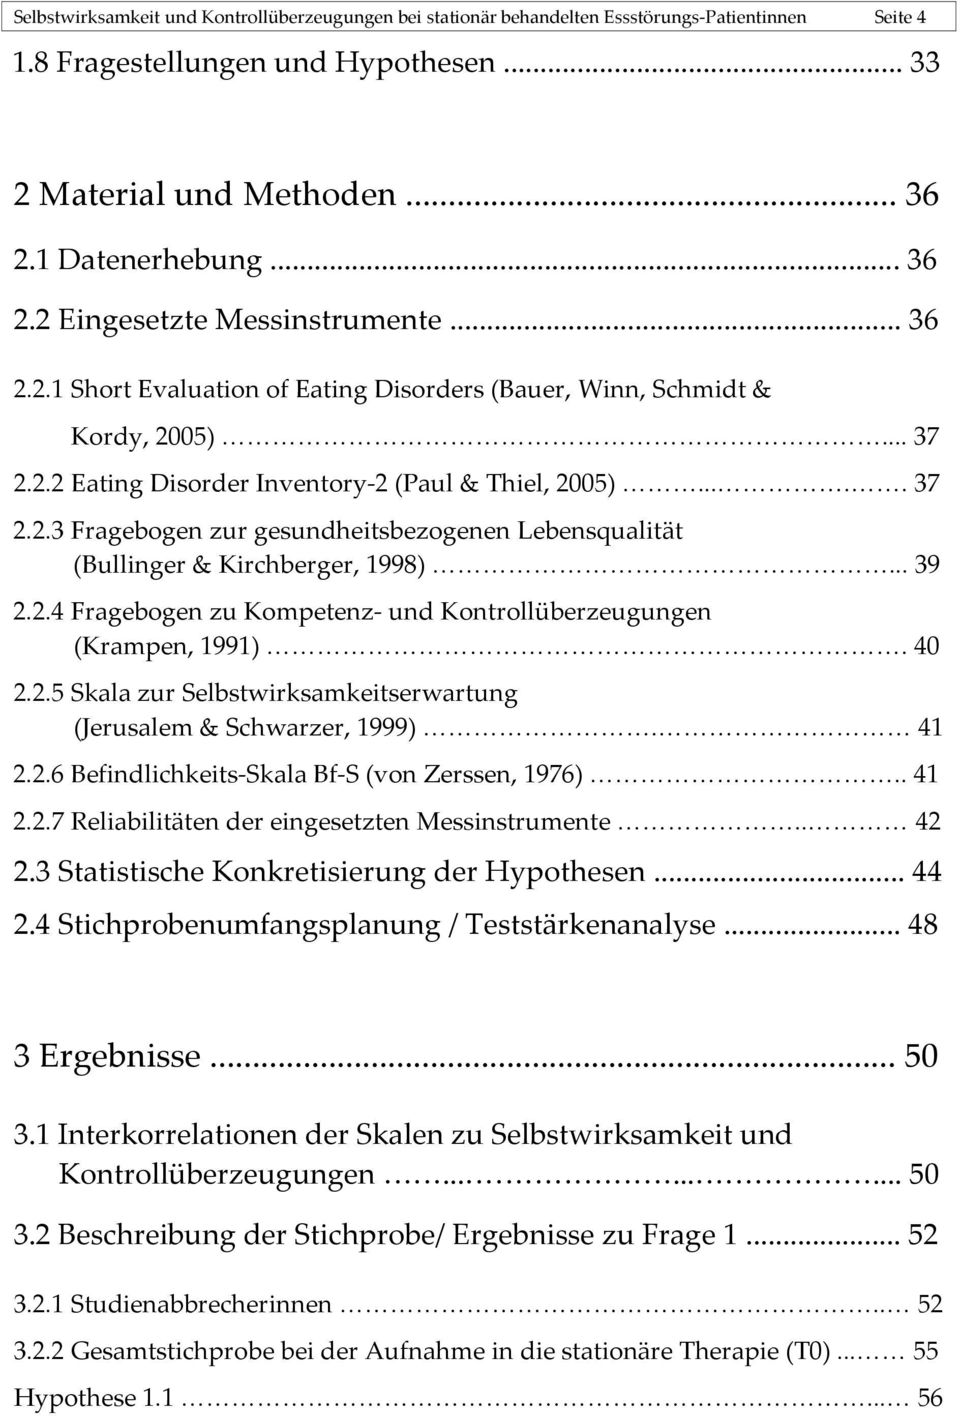 .... 37 2.2.3 Fragebogen zur gesundheitsbezogenen Lebensqualität (Bullinger & Kirchberger, 1998)... 39 2.2.4 Fragebogen zu Kompetenz- und Kontrollüberzeugungen (Krampen, 1991). 40 2.2.5 Skala zur Selbstwirksamkeitserwartung (Jerusalem & Schwarzer, 1999).